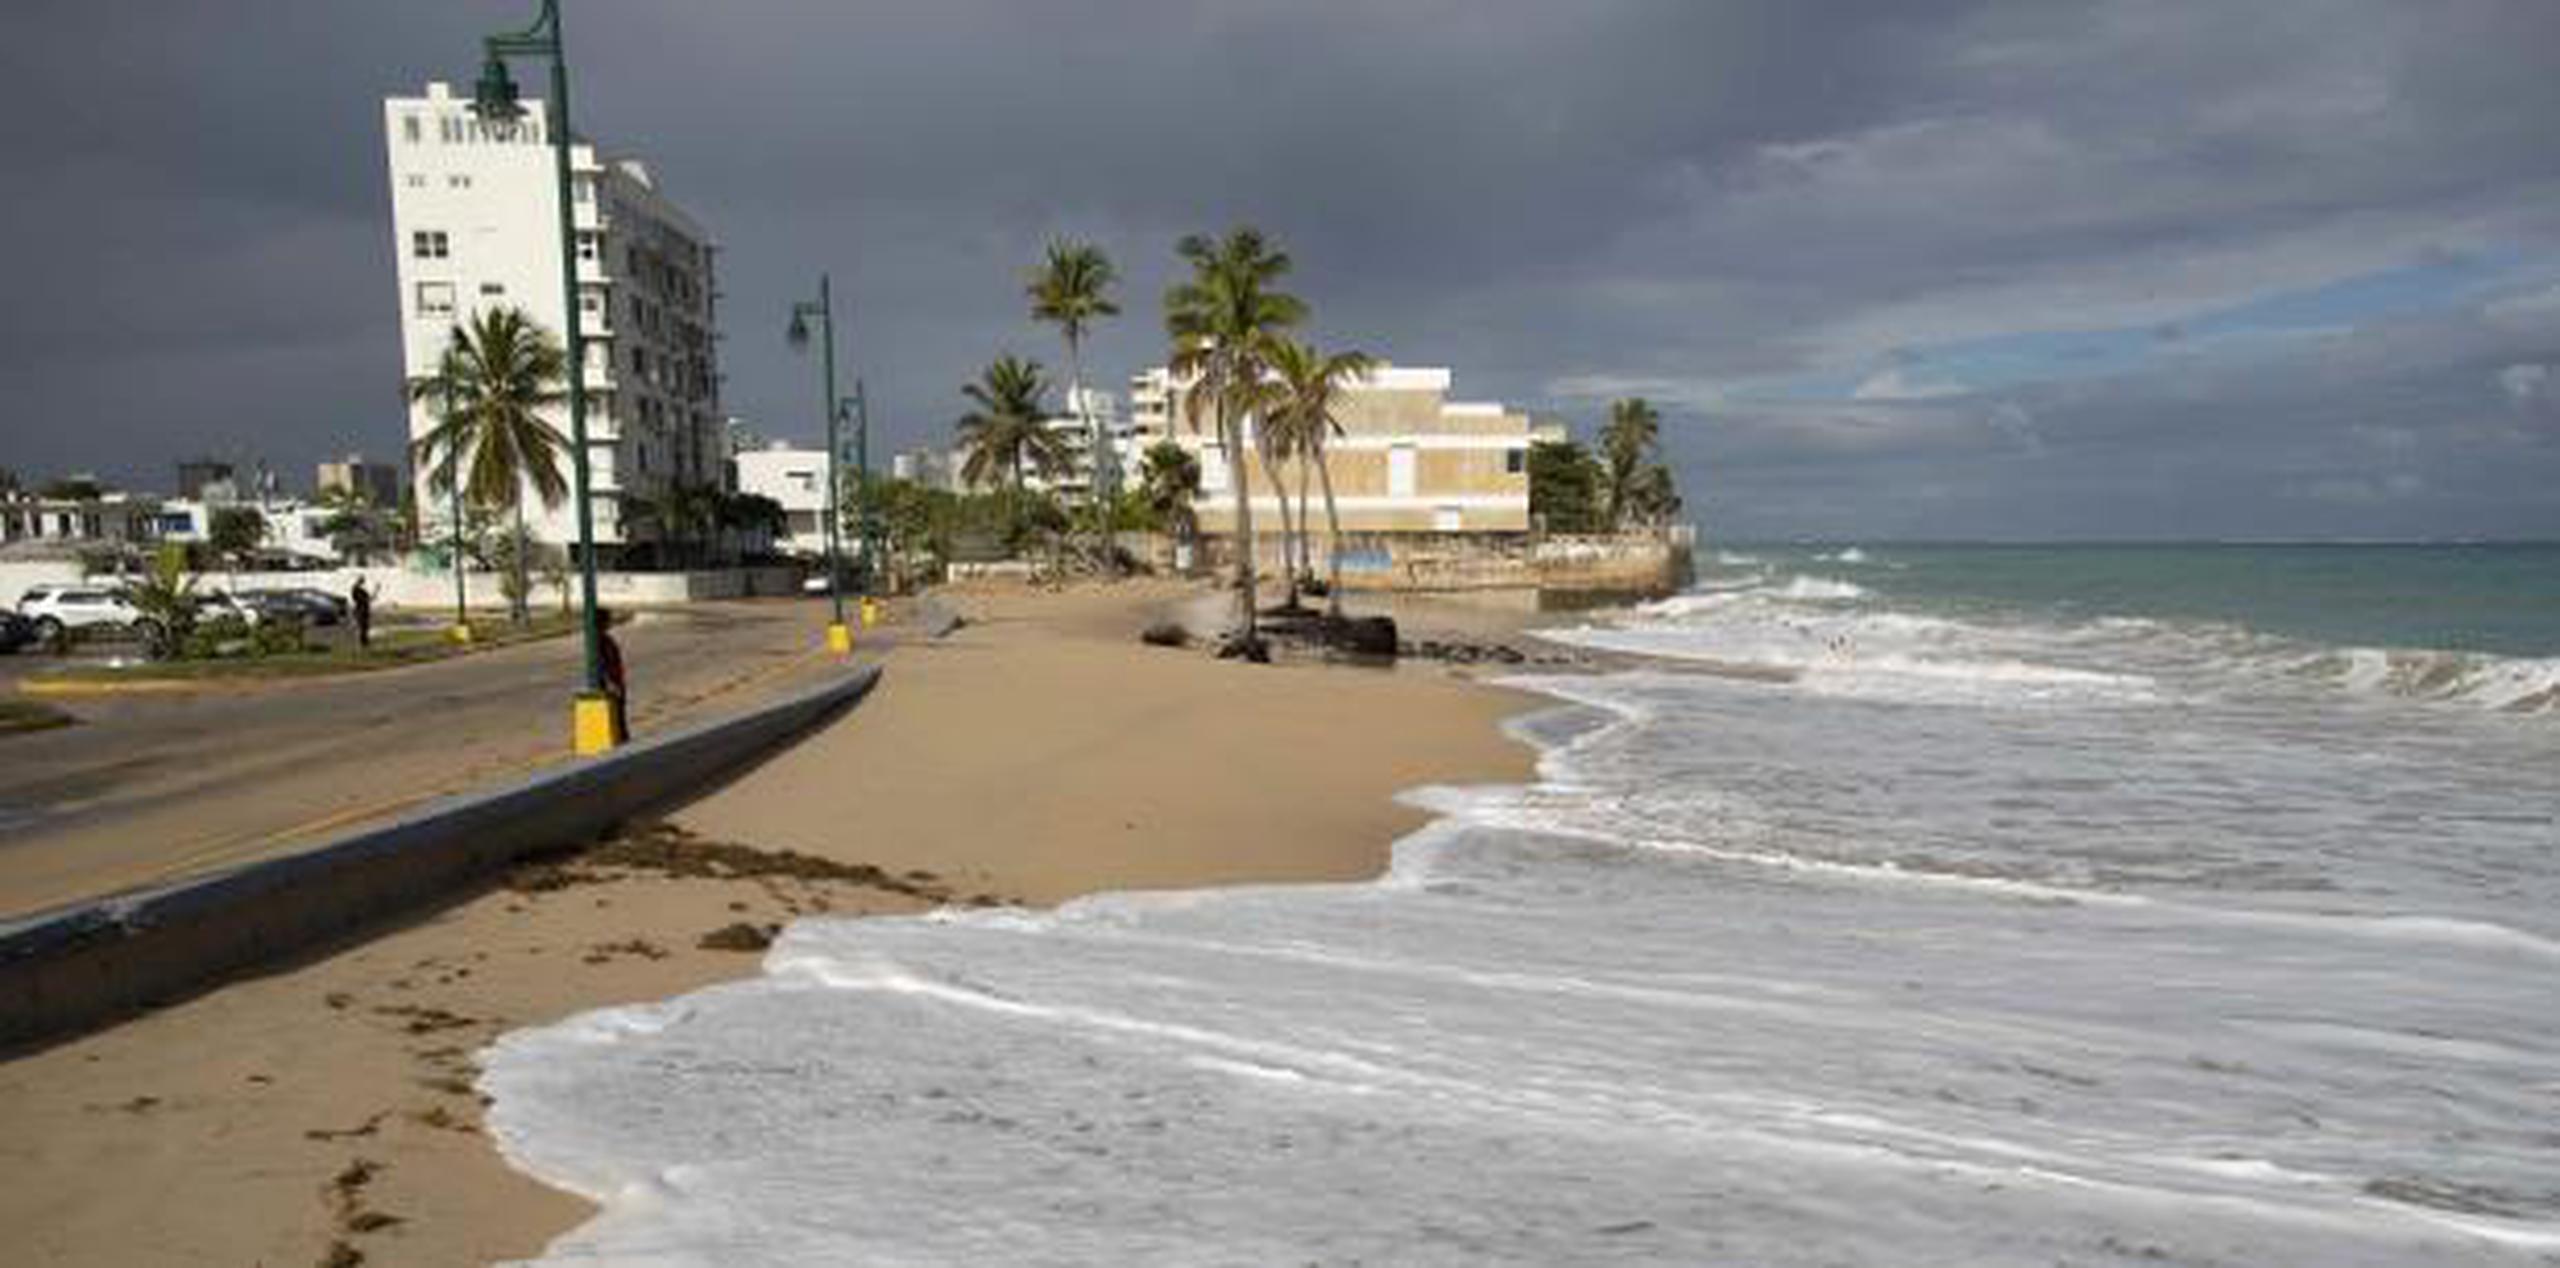 El fuerte oleaje socava la costa ya erosionada en Ocean Park, San Juan. (teresa.canino@gfrmedia.com)